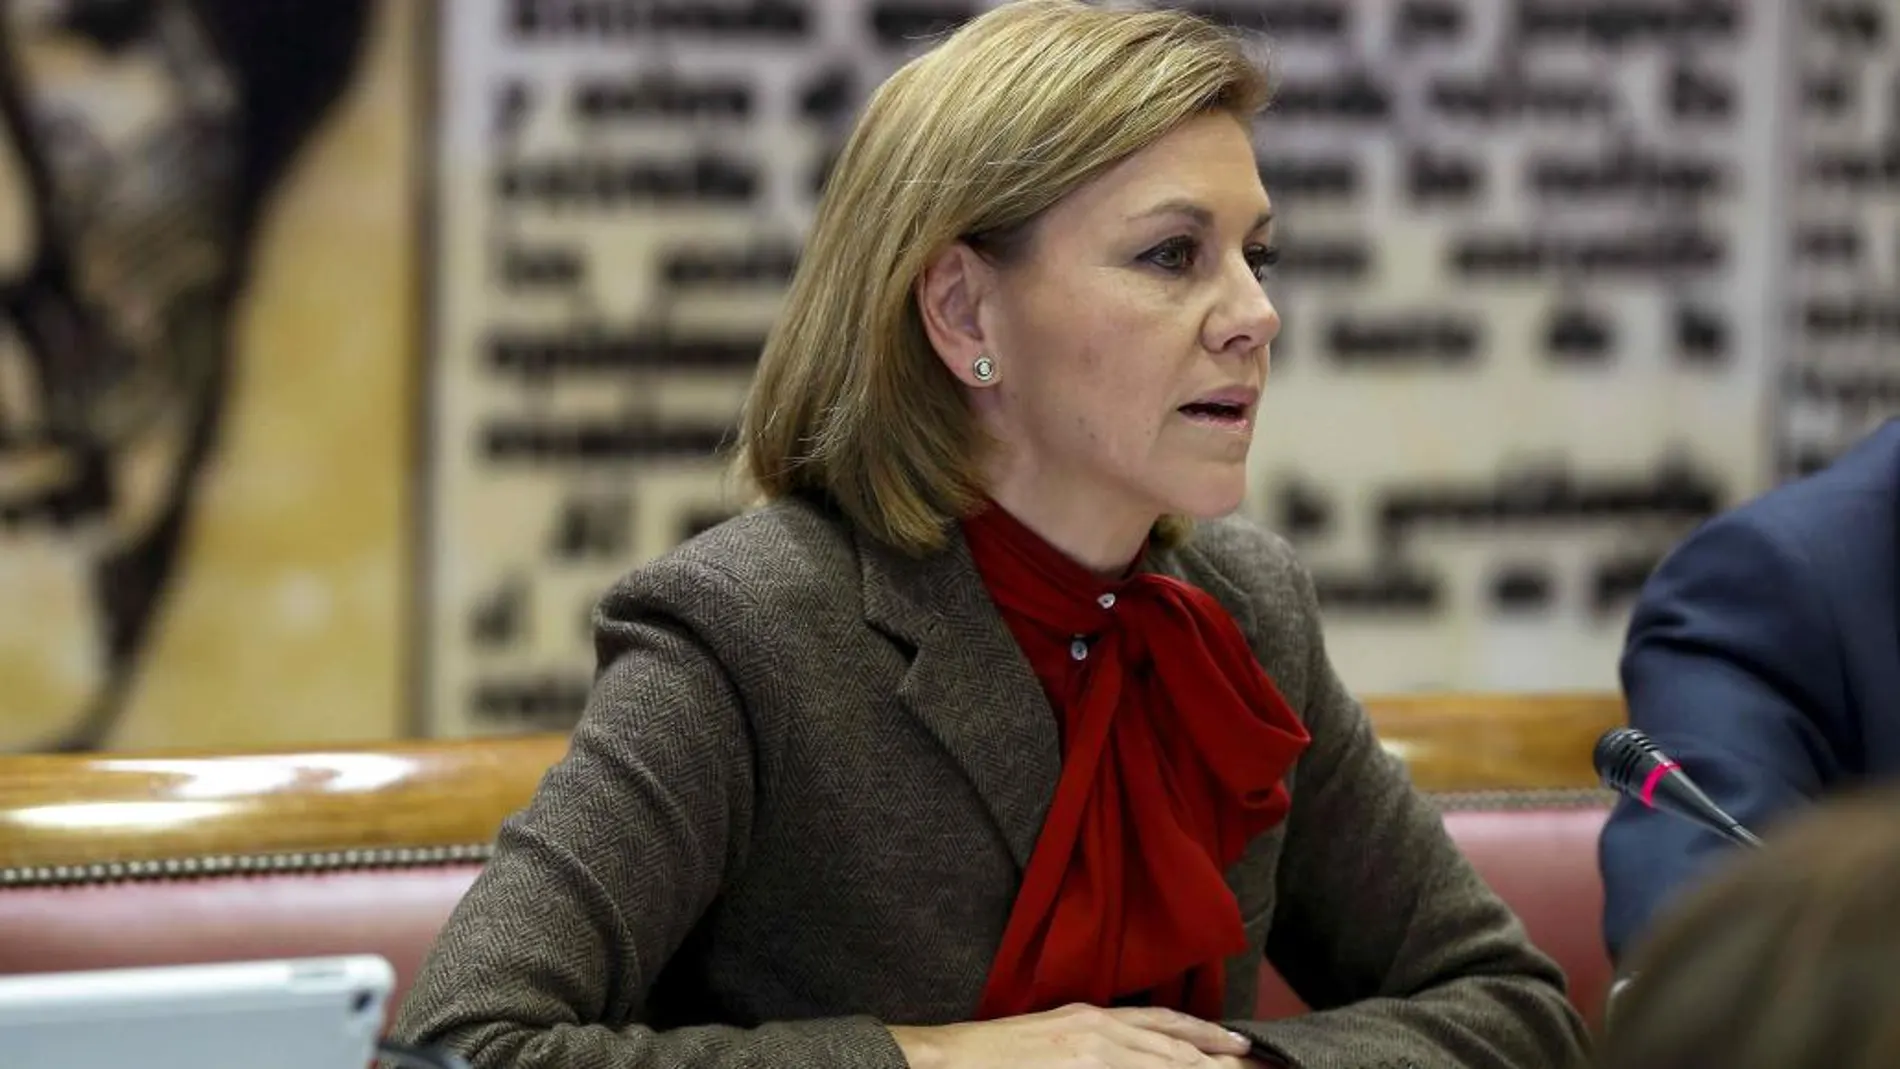 La ministra de Defensa, María Dolores de Cospedal, comparece en la Comisión de Defensa del Senado para informar sobre las líneas de su departamento esta legislatura